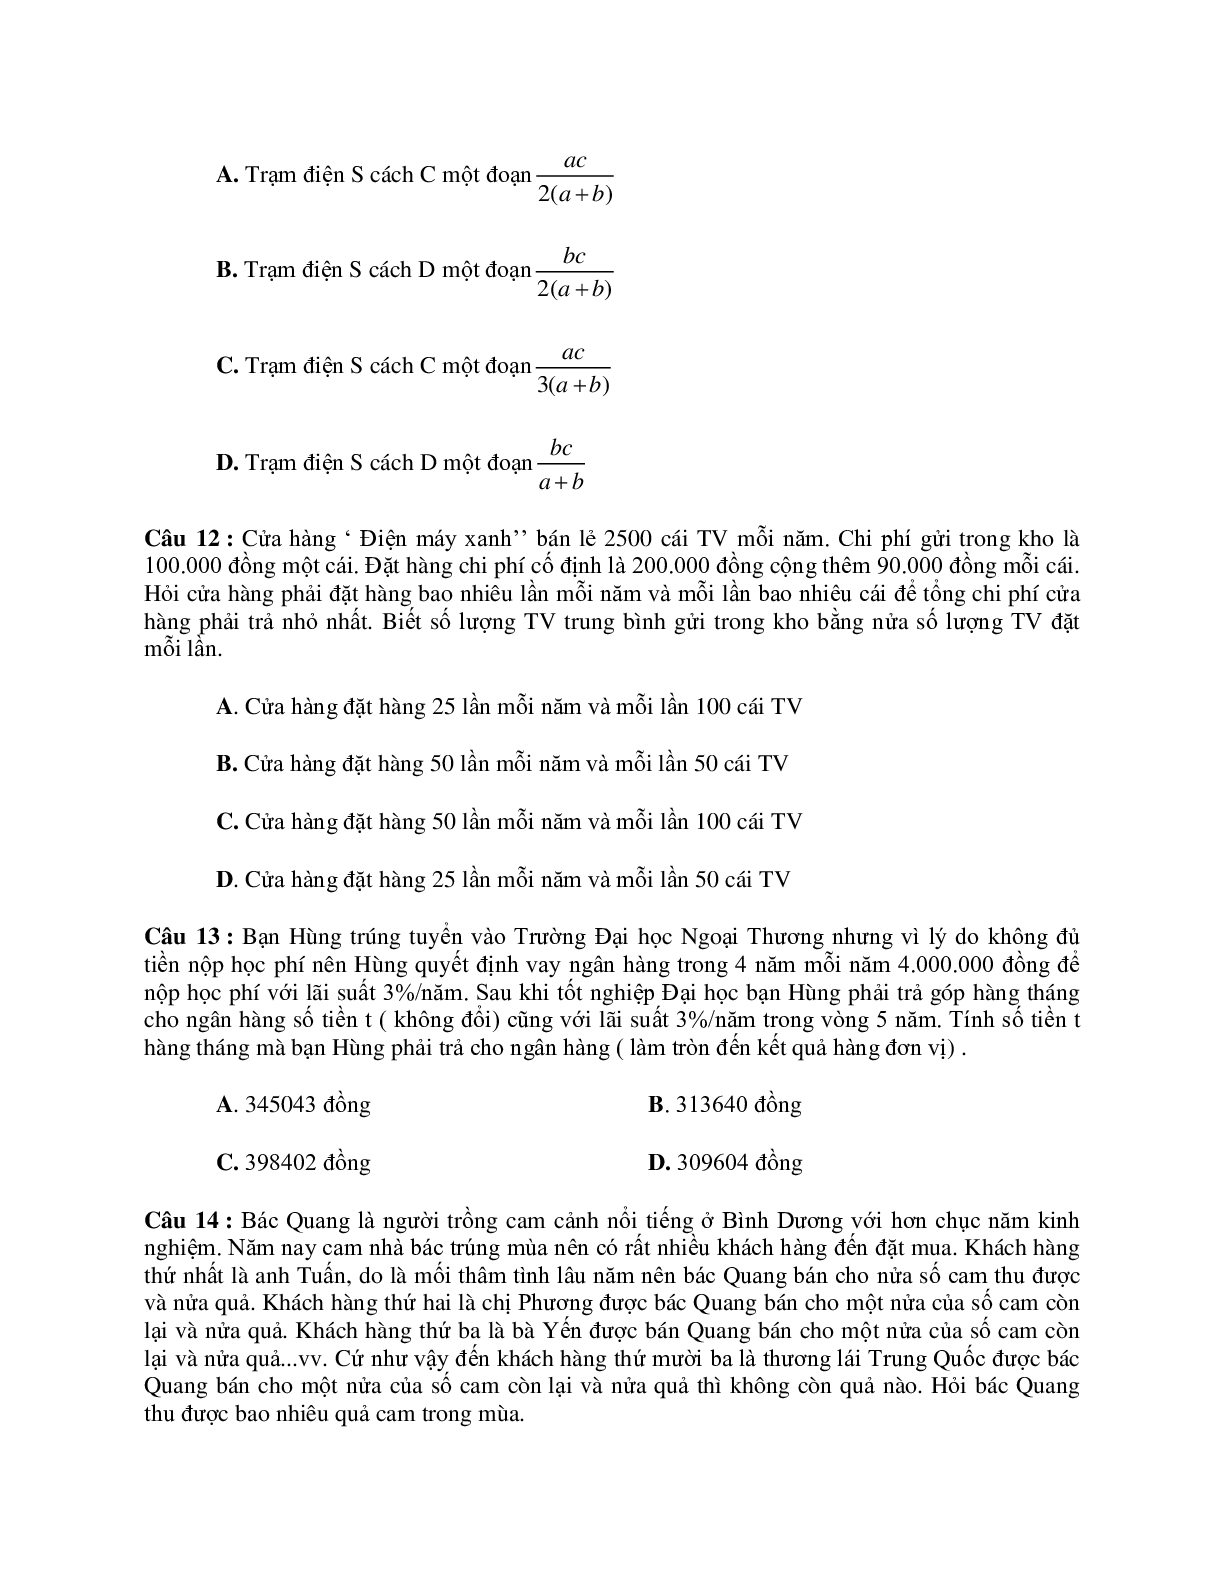 242 bài tập trắc nghiệm chuyên đề toán ứng dụng thực tế chọn lọc (trang 5)